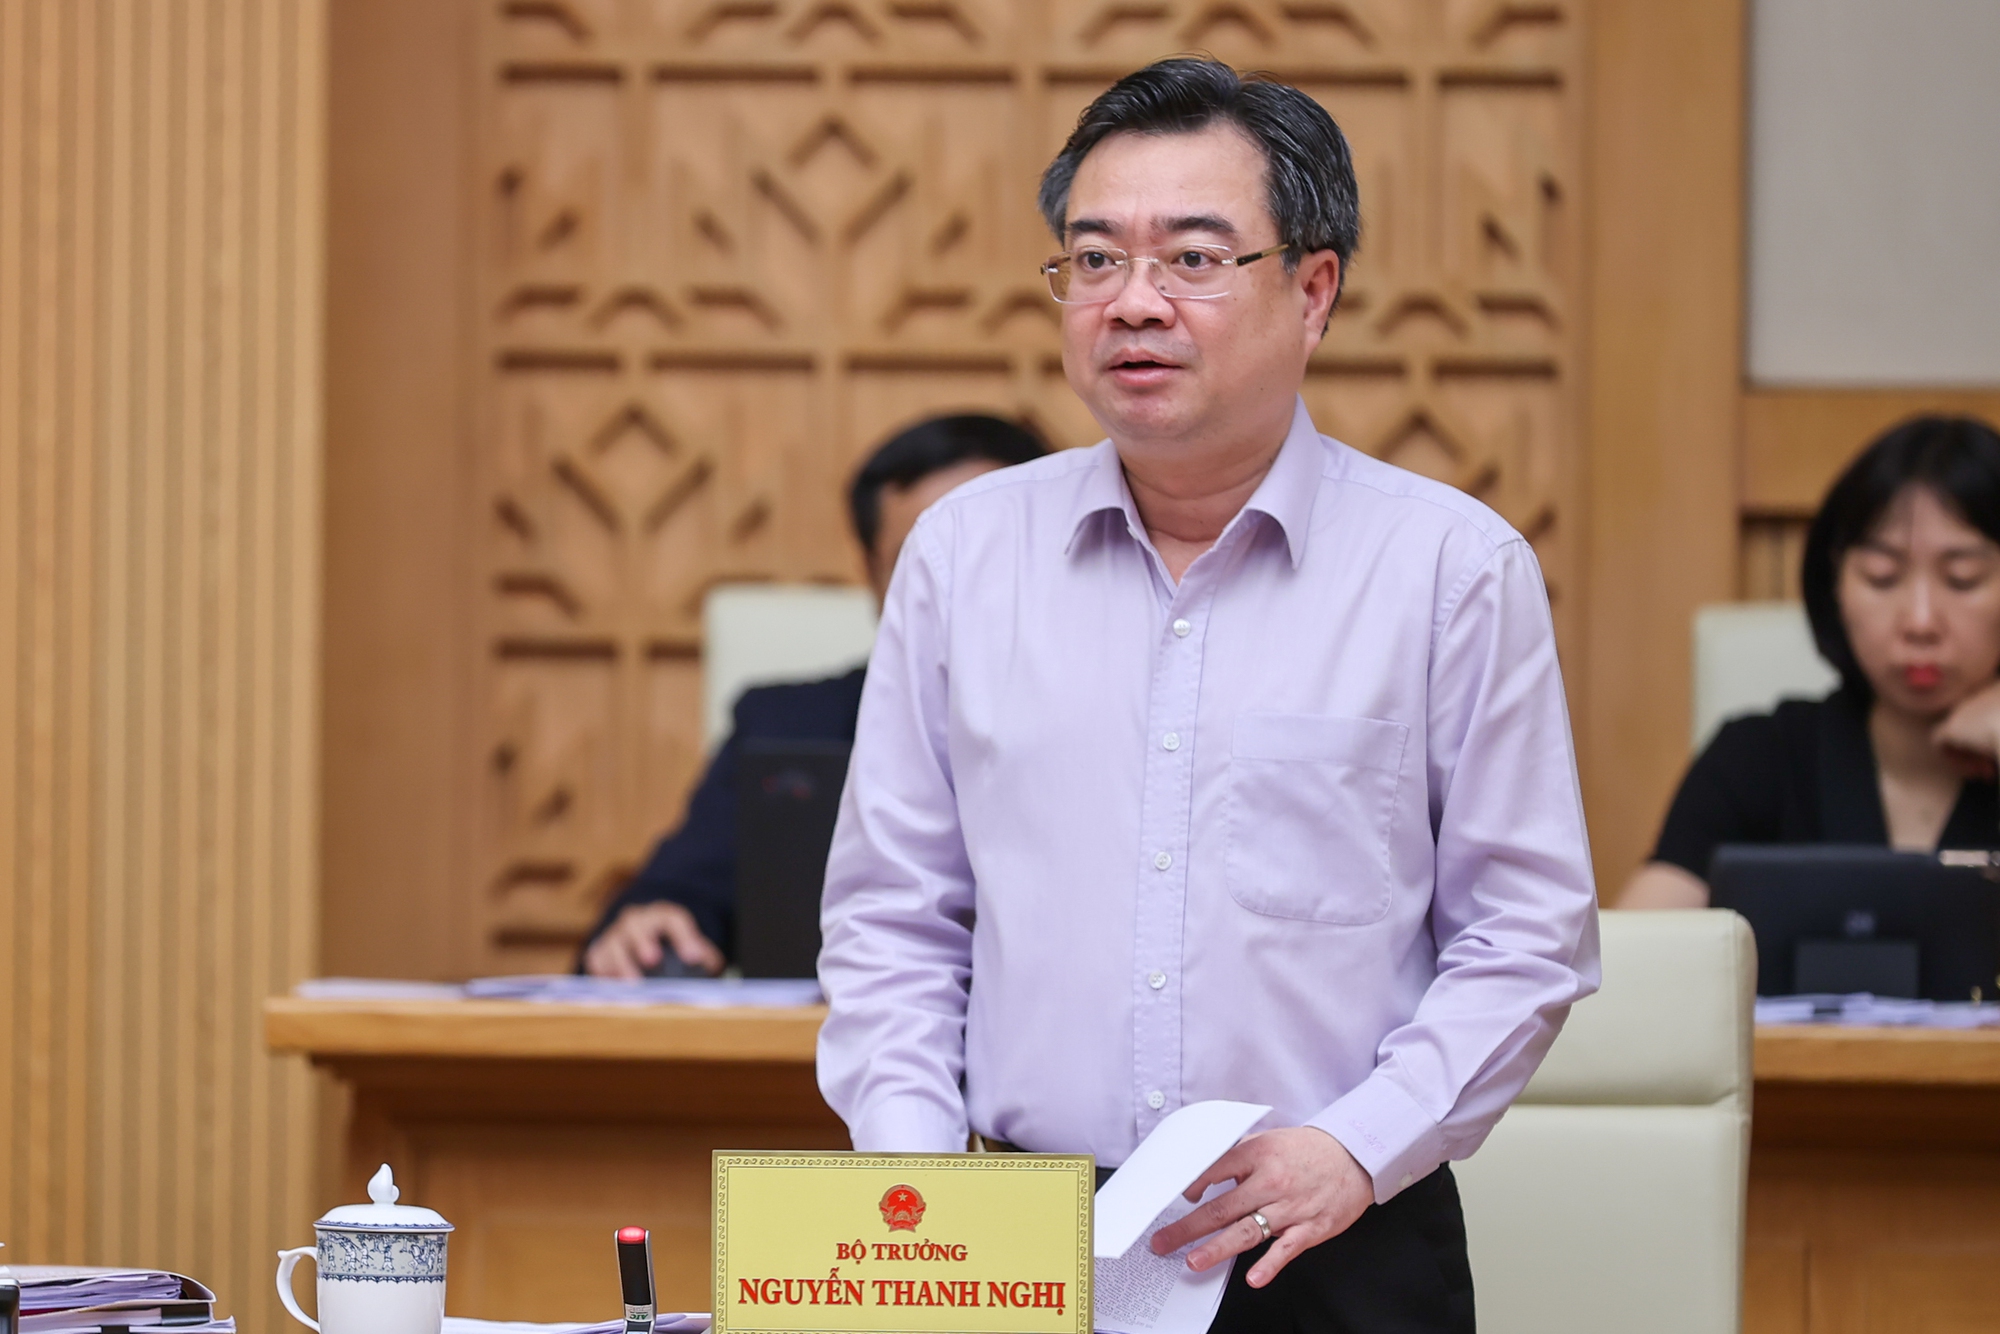 Bộ trưởng Bộ Xây dựng Nguyễn Thanh Nghị trình bày dự án Luật Quy hoạch đô thị và nông thôn - Ảnh: VGP/Nhật Bắc